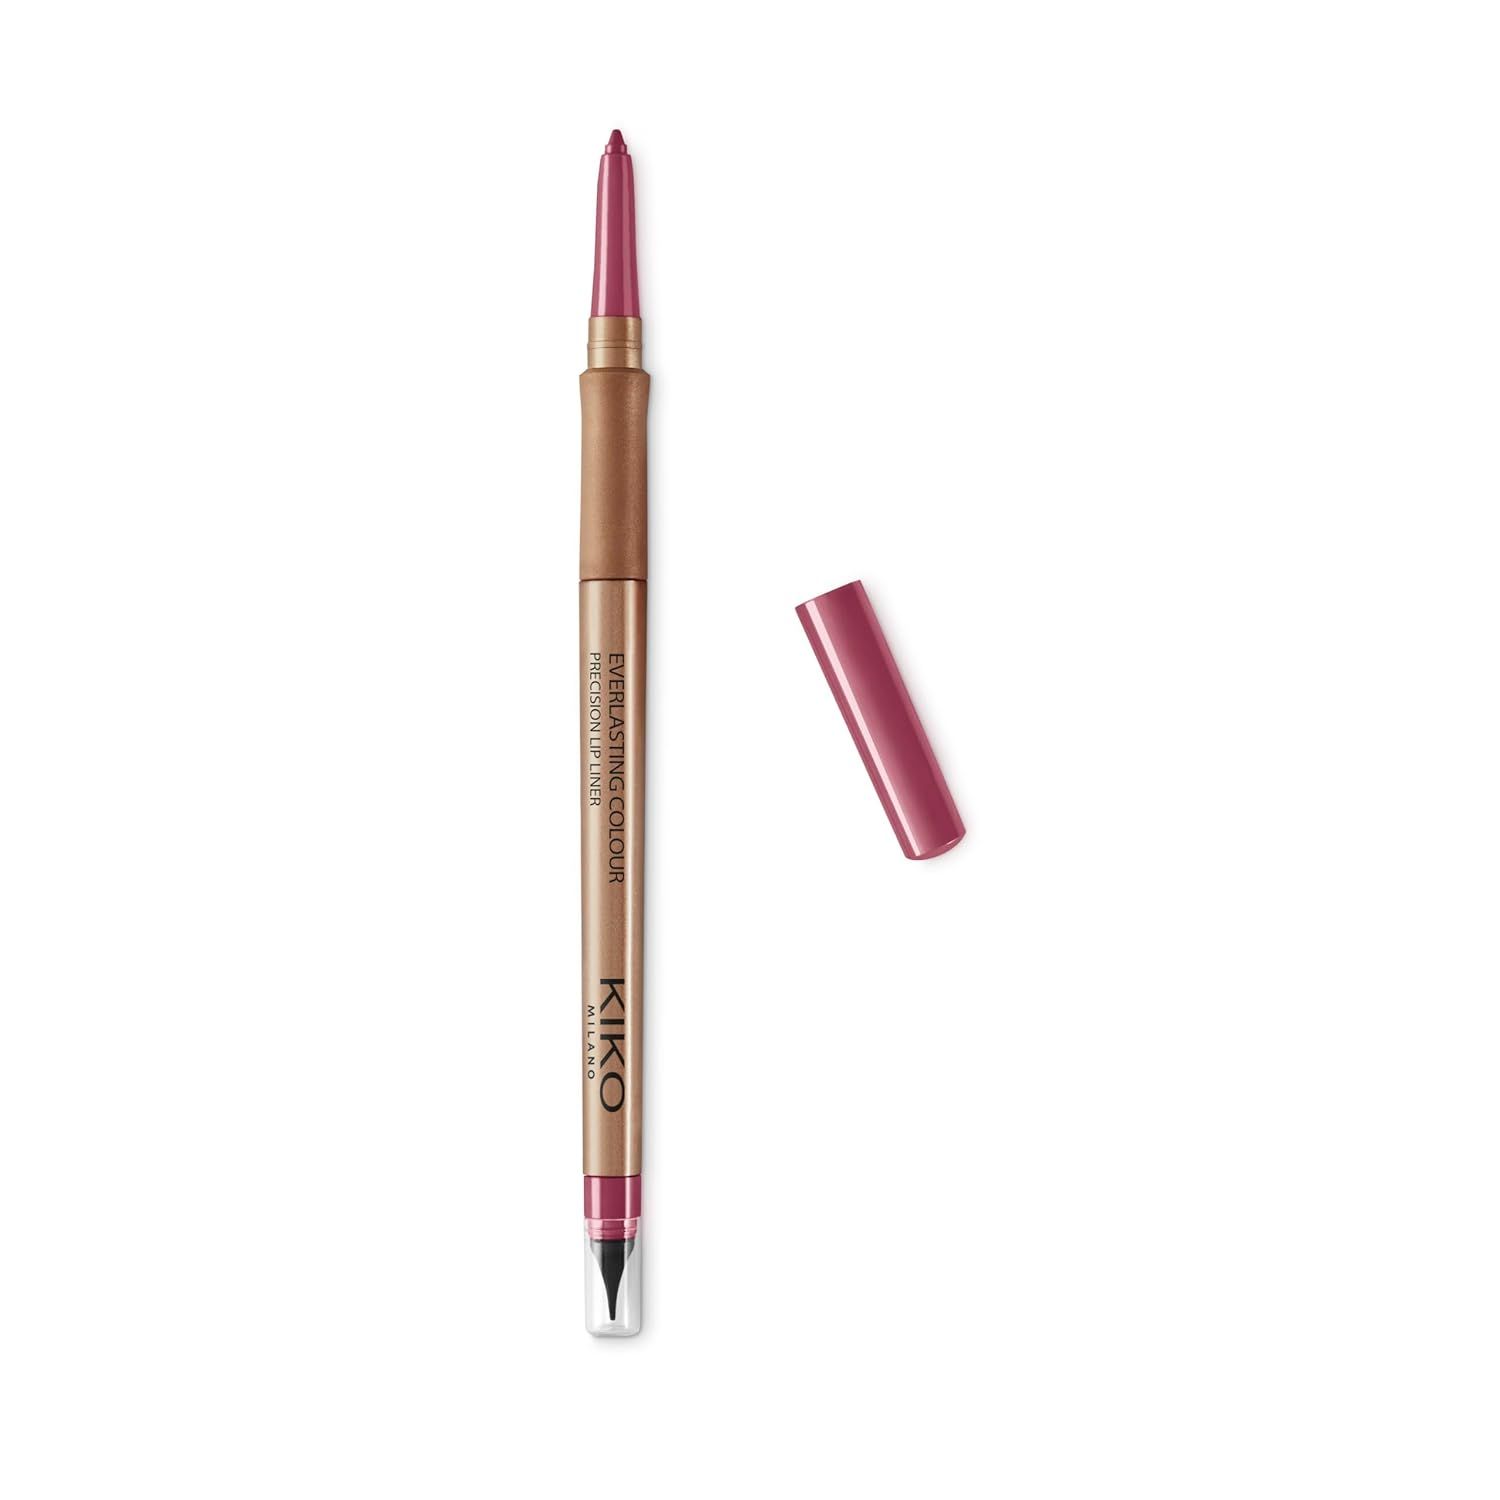 Kiko MILANO - New Everlasting Lip Liner 508 Automatic lip pencil | Amazon (US)